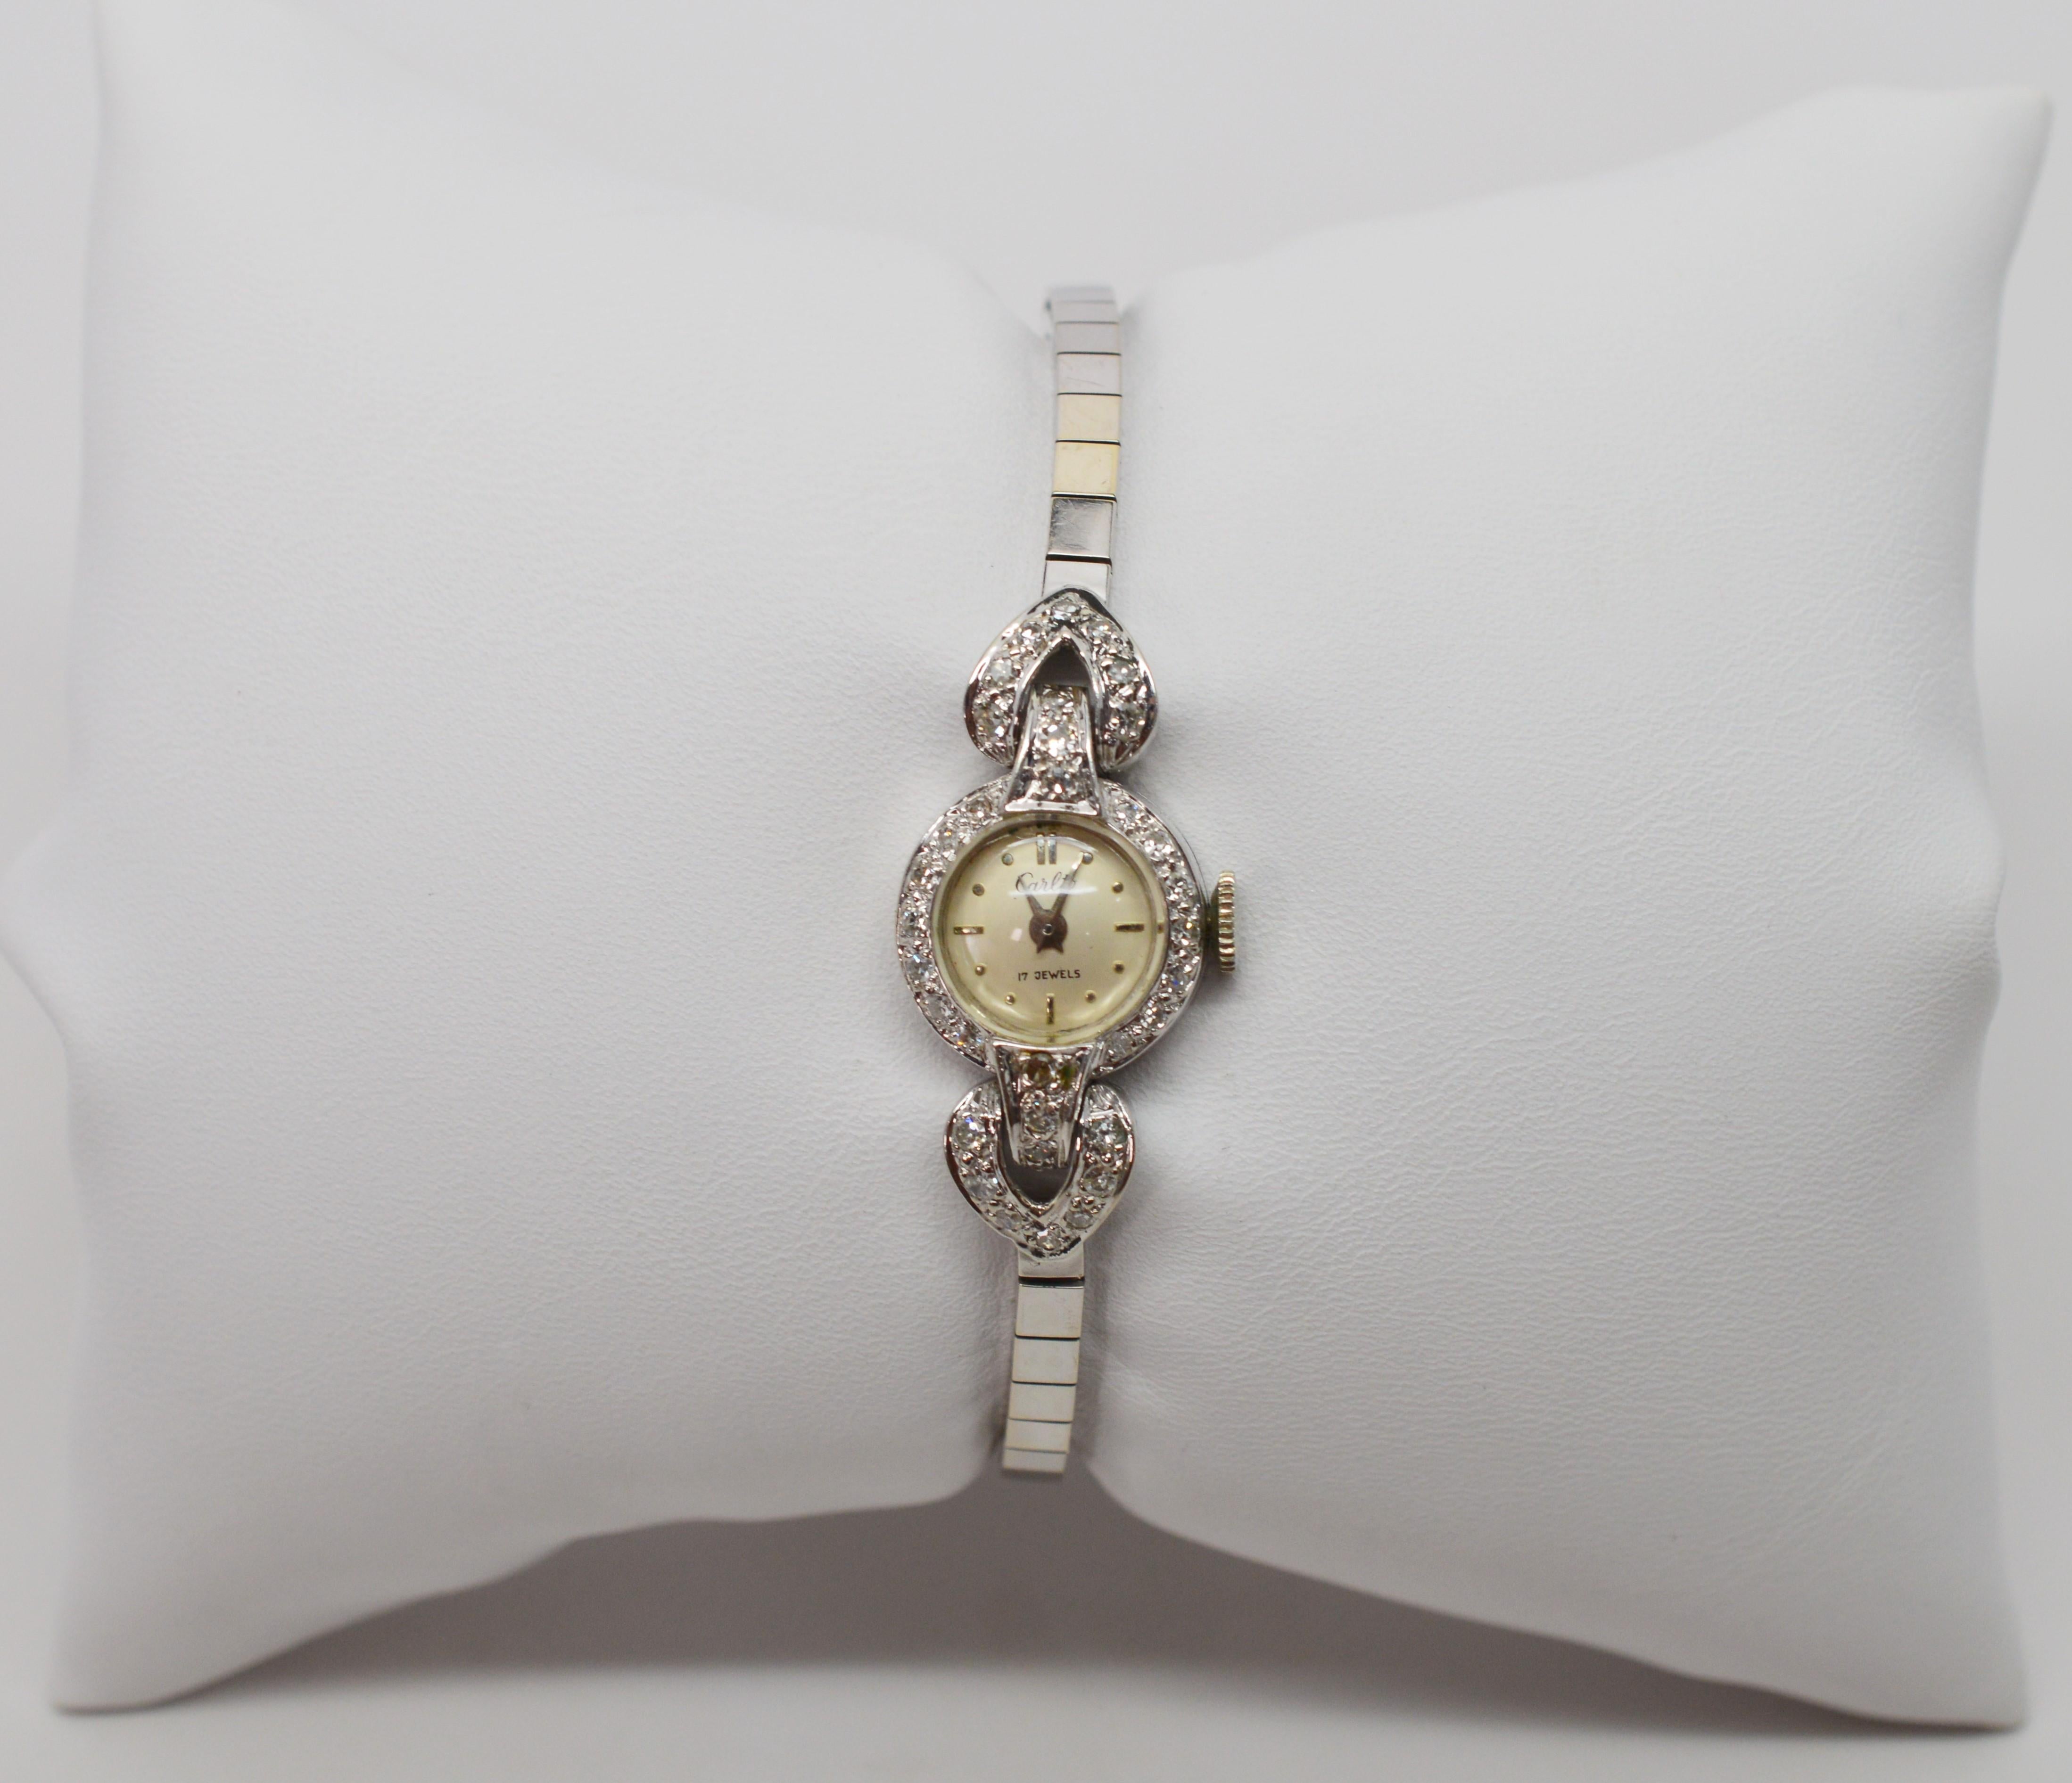 Fine et féminine en or blanc de quatorze carats, cette montre bracelet antique de Carloto pour femme, rehaussée de diamants, est exquise. 
Trente-six diamants H/I1, d'un poids total d'un tiers de carat, ornent sa petite face ronde et ses charnières